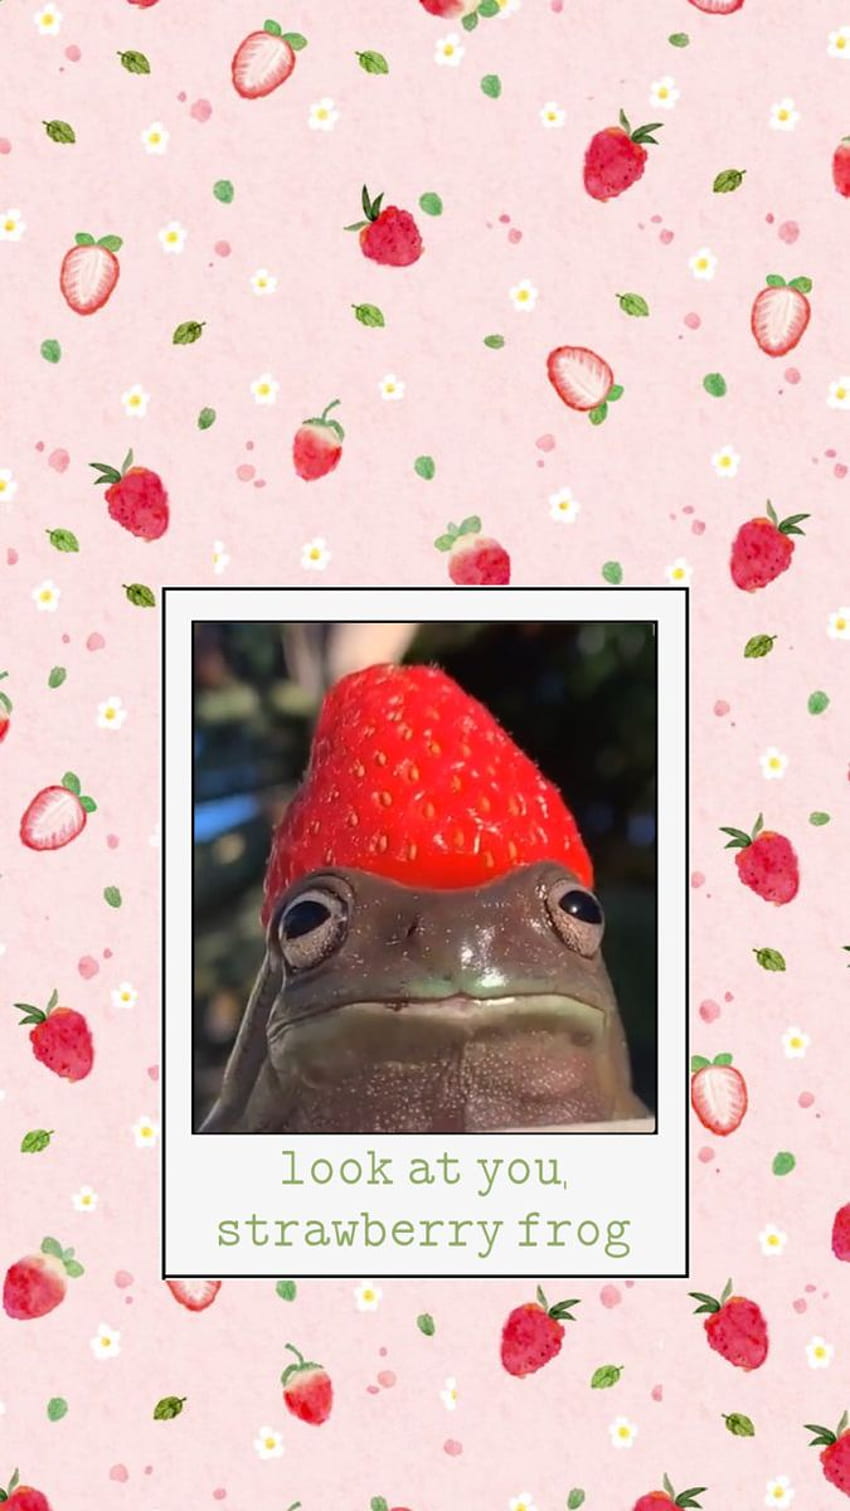 Strawberry Frog by xxMiniPandaxx on DeviantArt